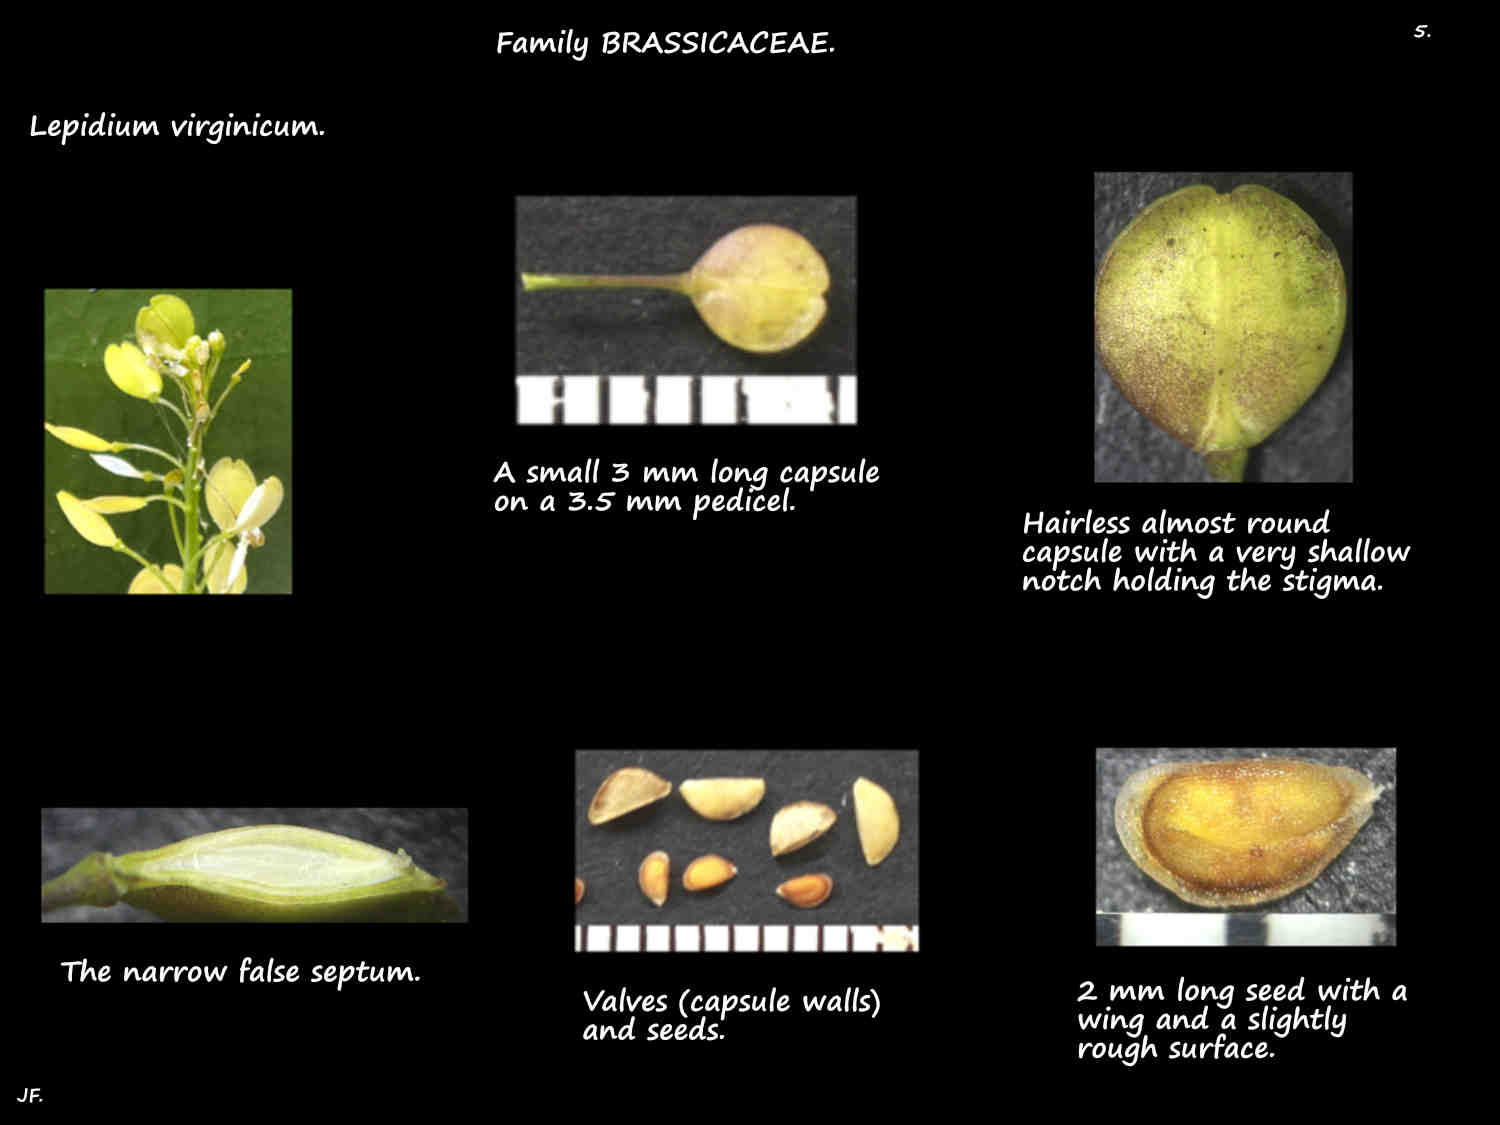 5 Lepidium virginicum capsules & seeds